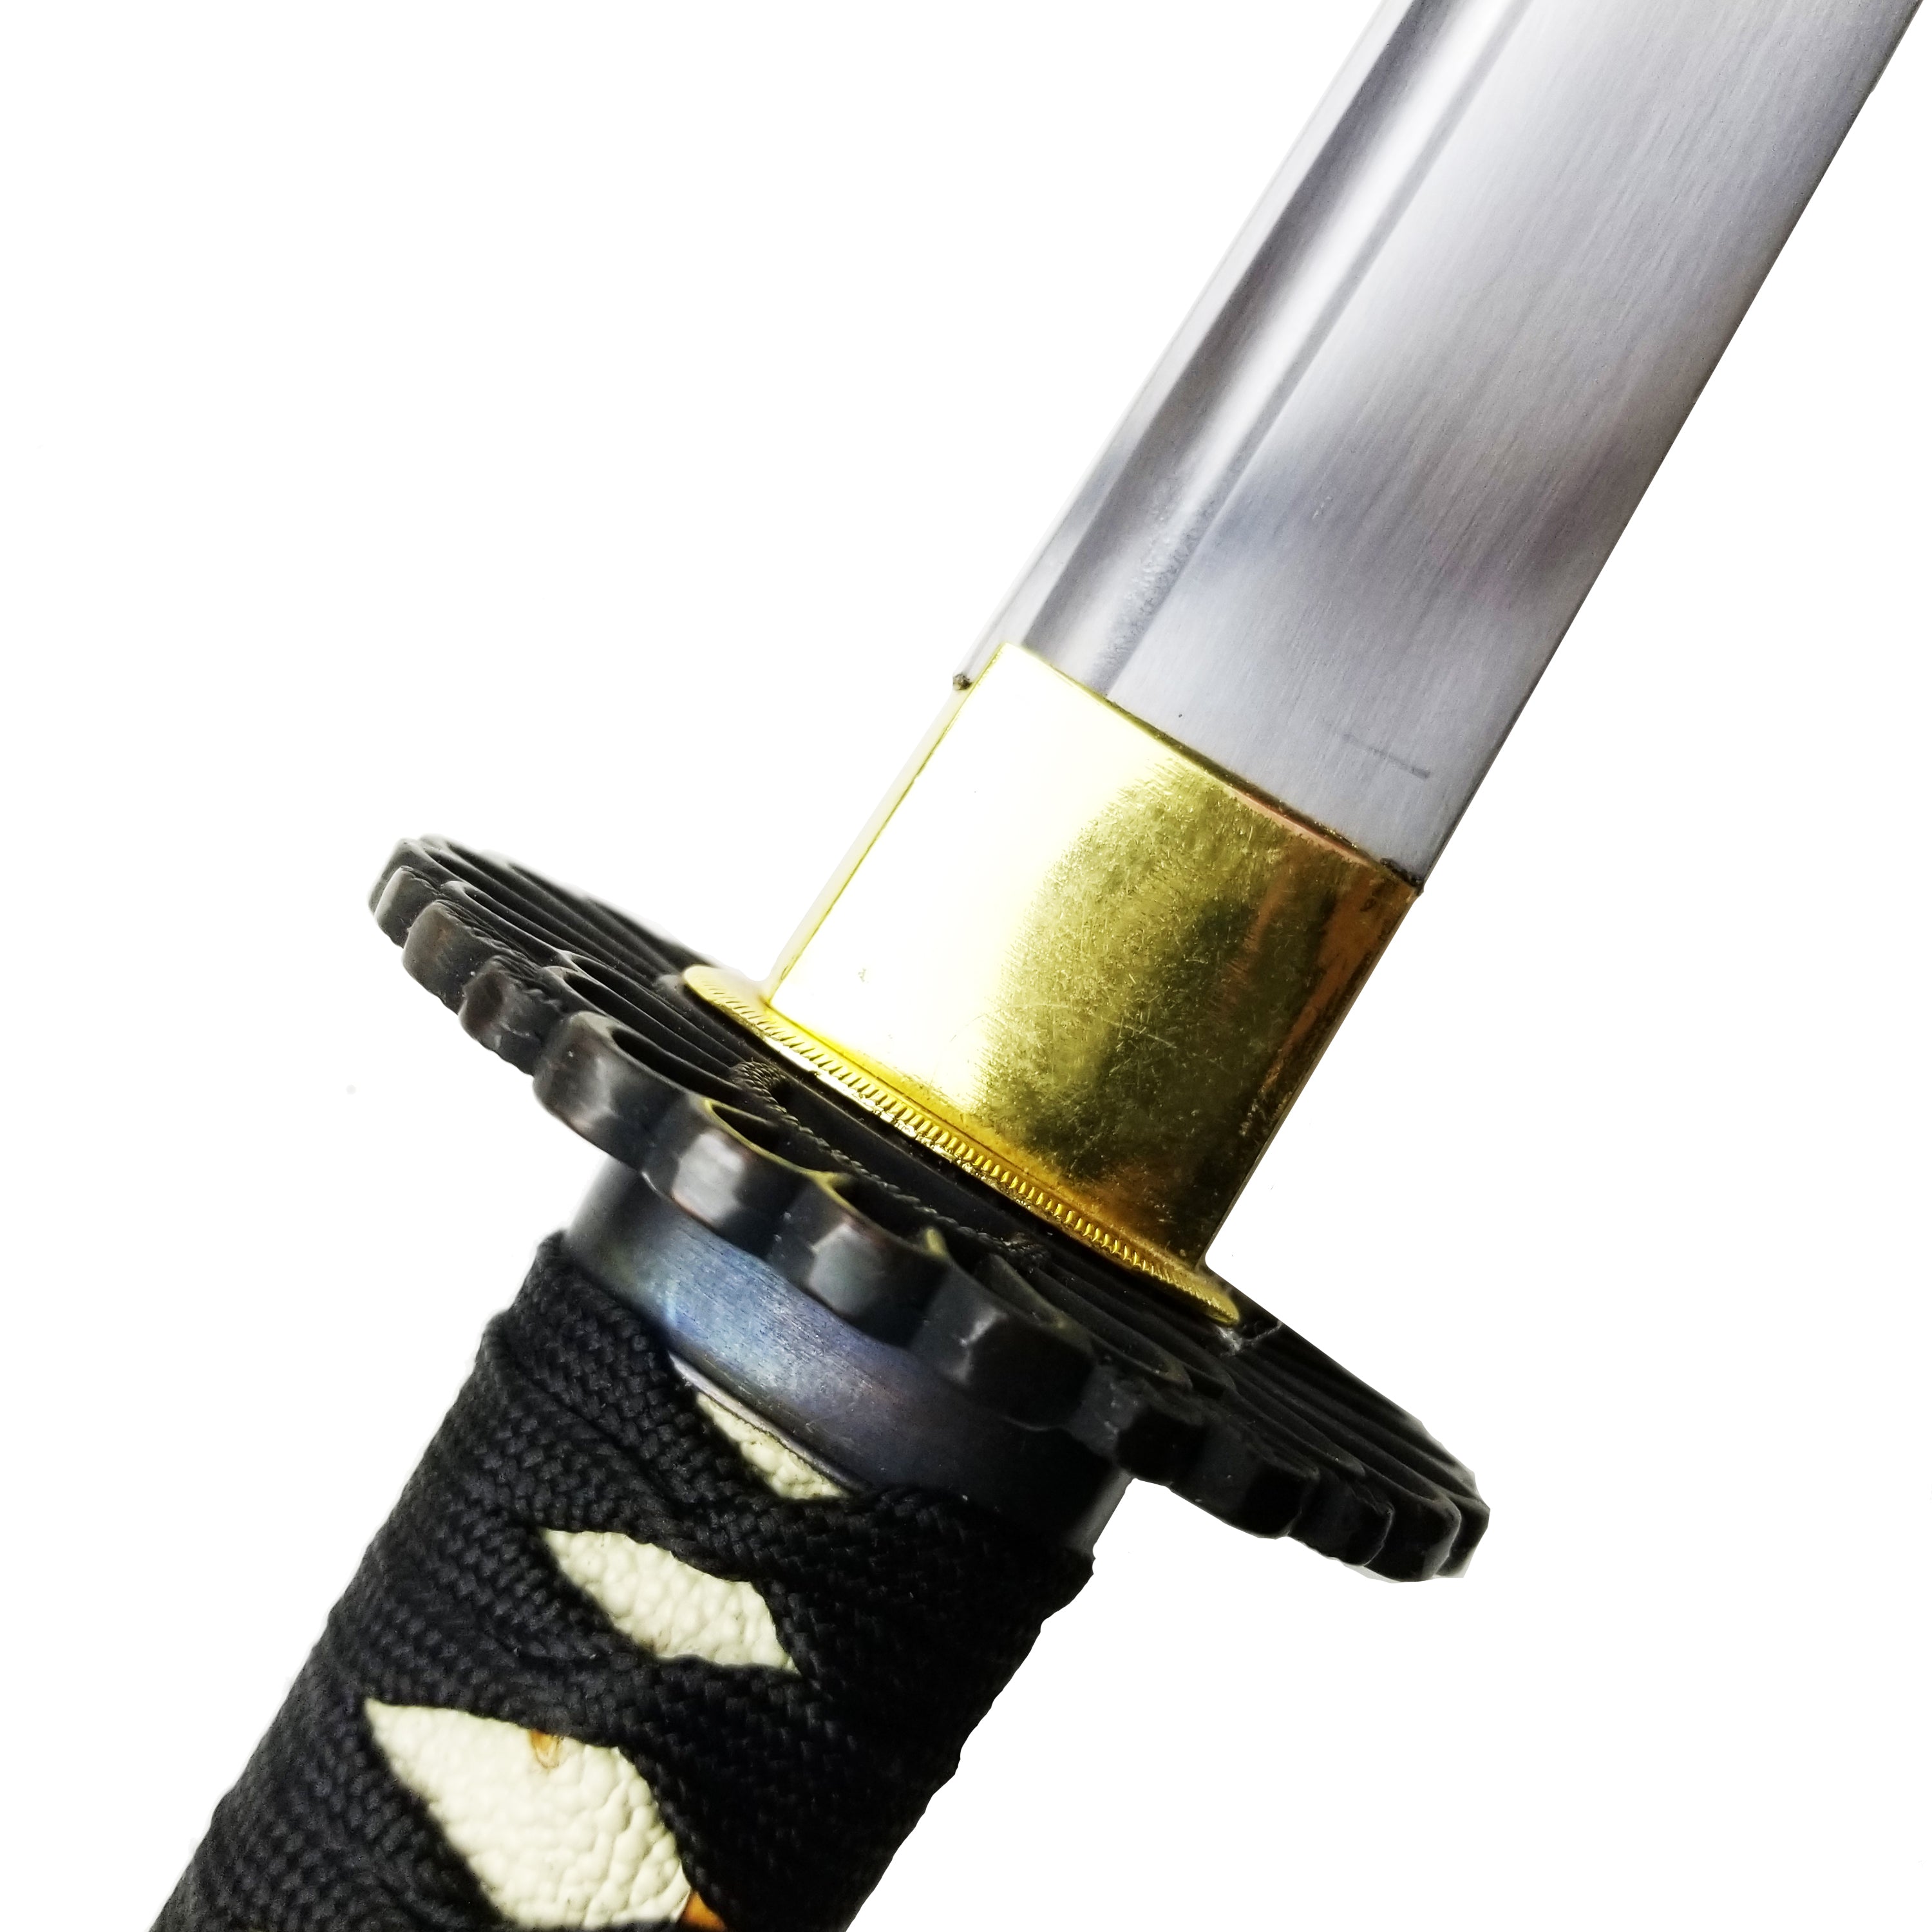 Oda Nobunaga Handmade Samurai Katana Sword Sharpen Edge with Gift Box